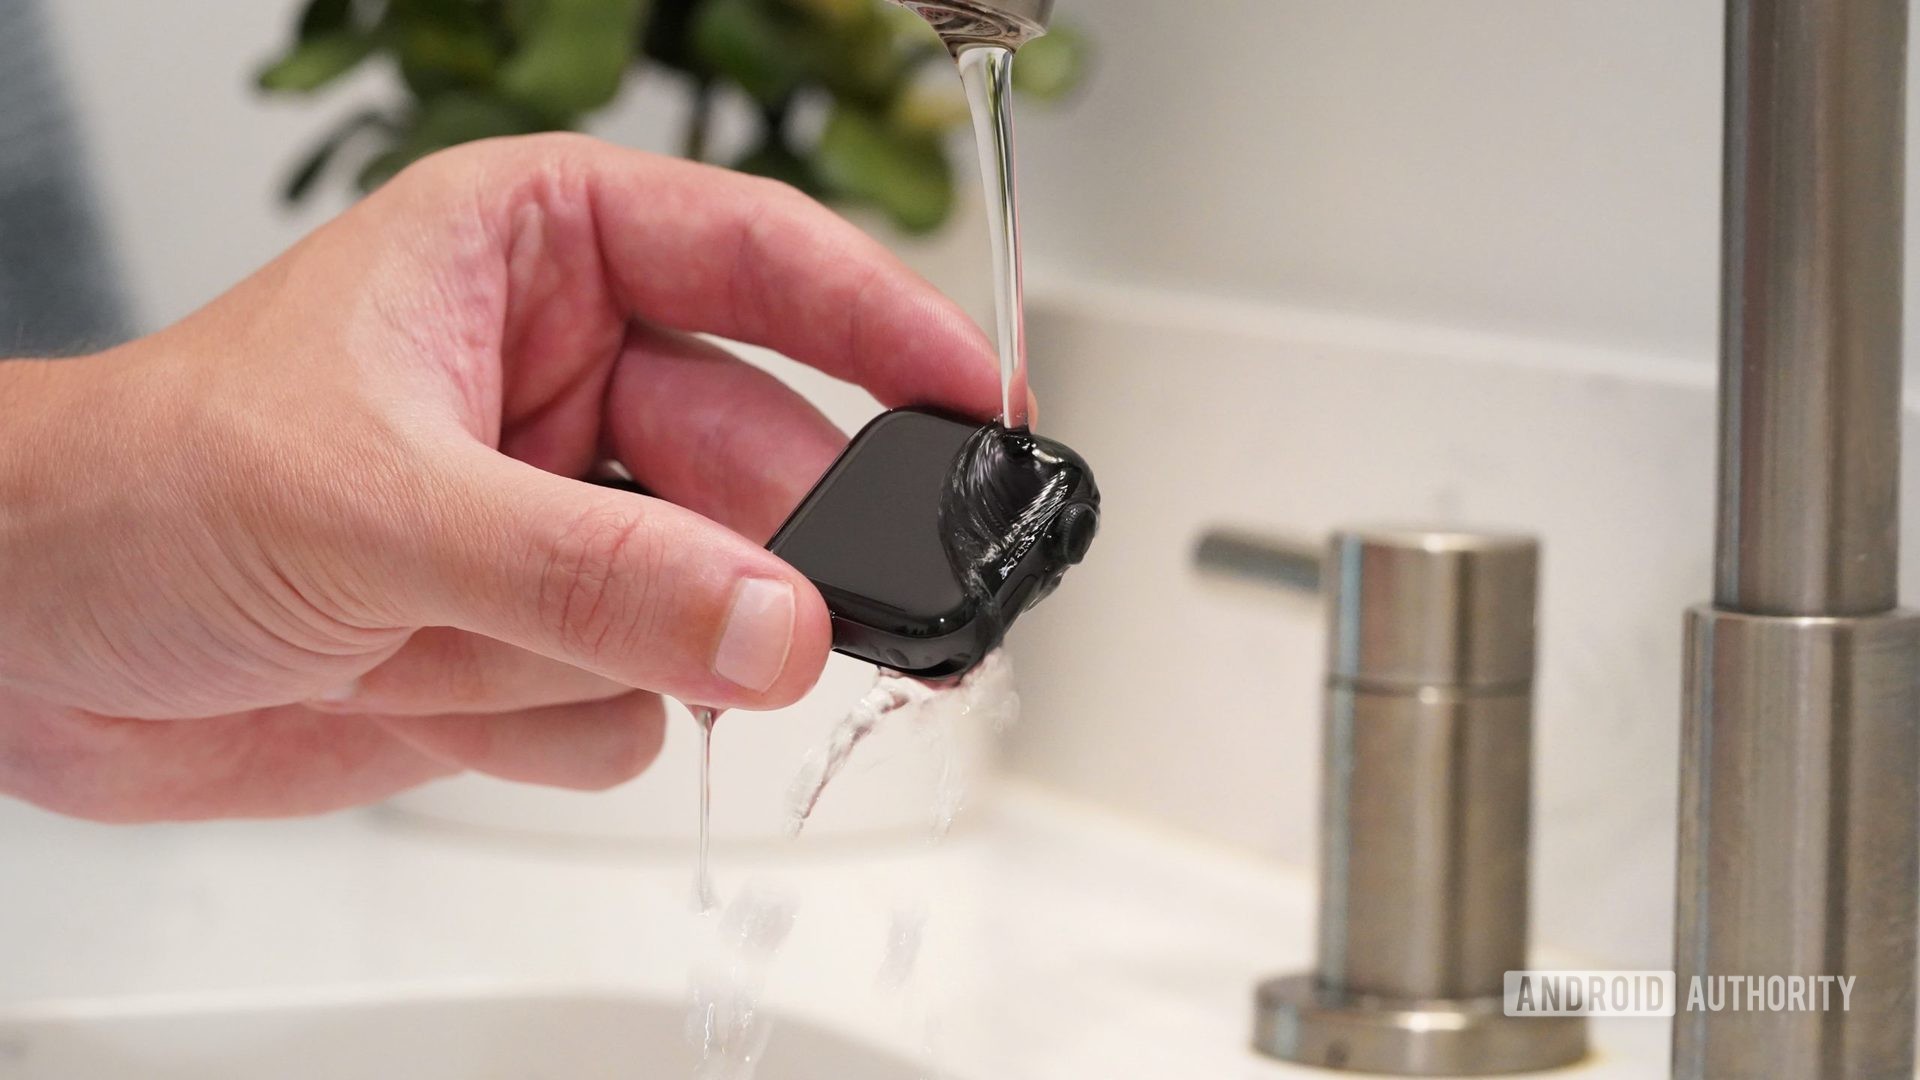 La mano masculina sostiene el Apple Watch Series 6 bajo un flujo bajo de agua tibia para limpiar el dispositivo.